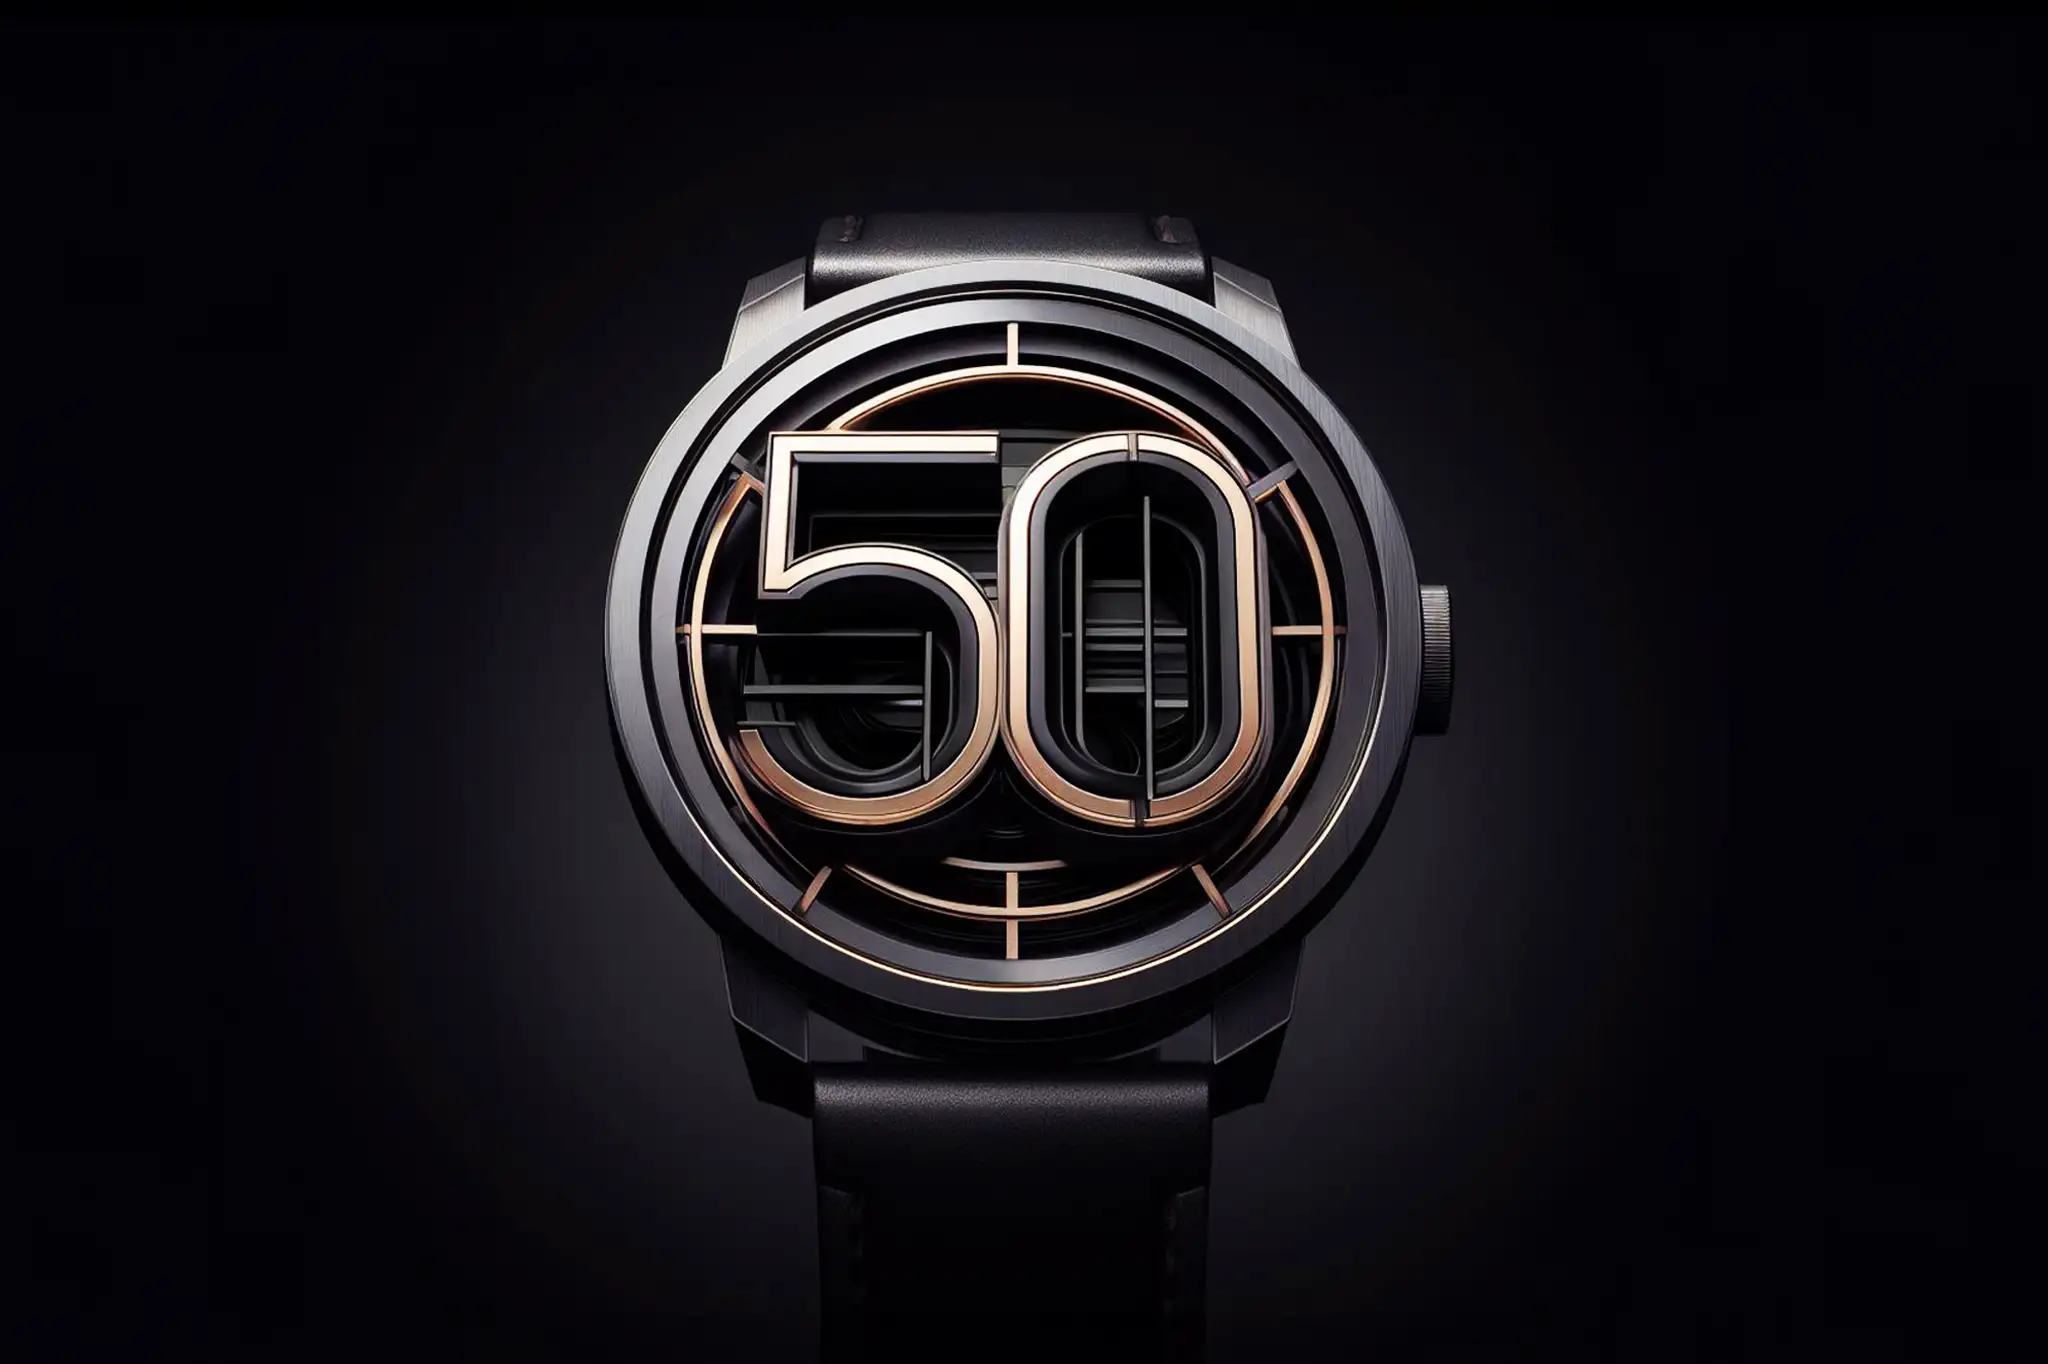 Euro 50 Uhren unter besten Auswahl der unter 50 Eine 50 |